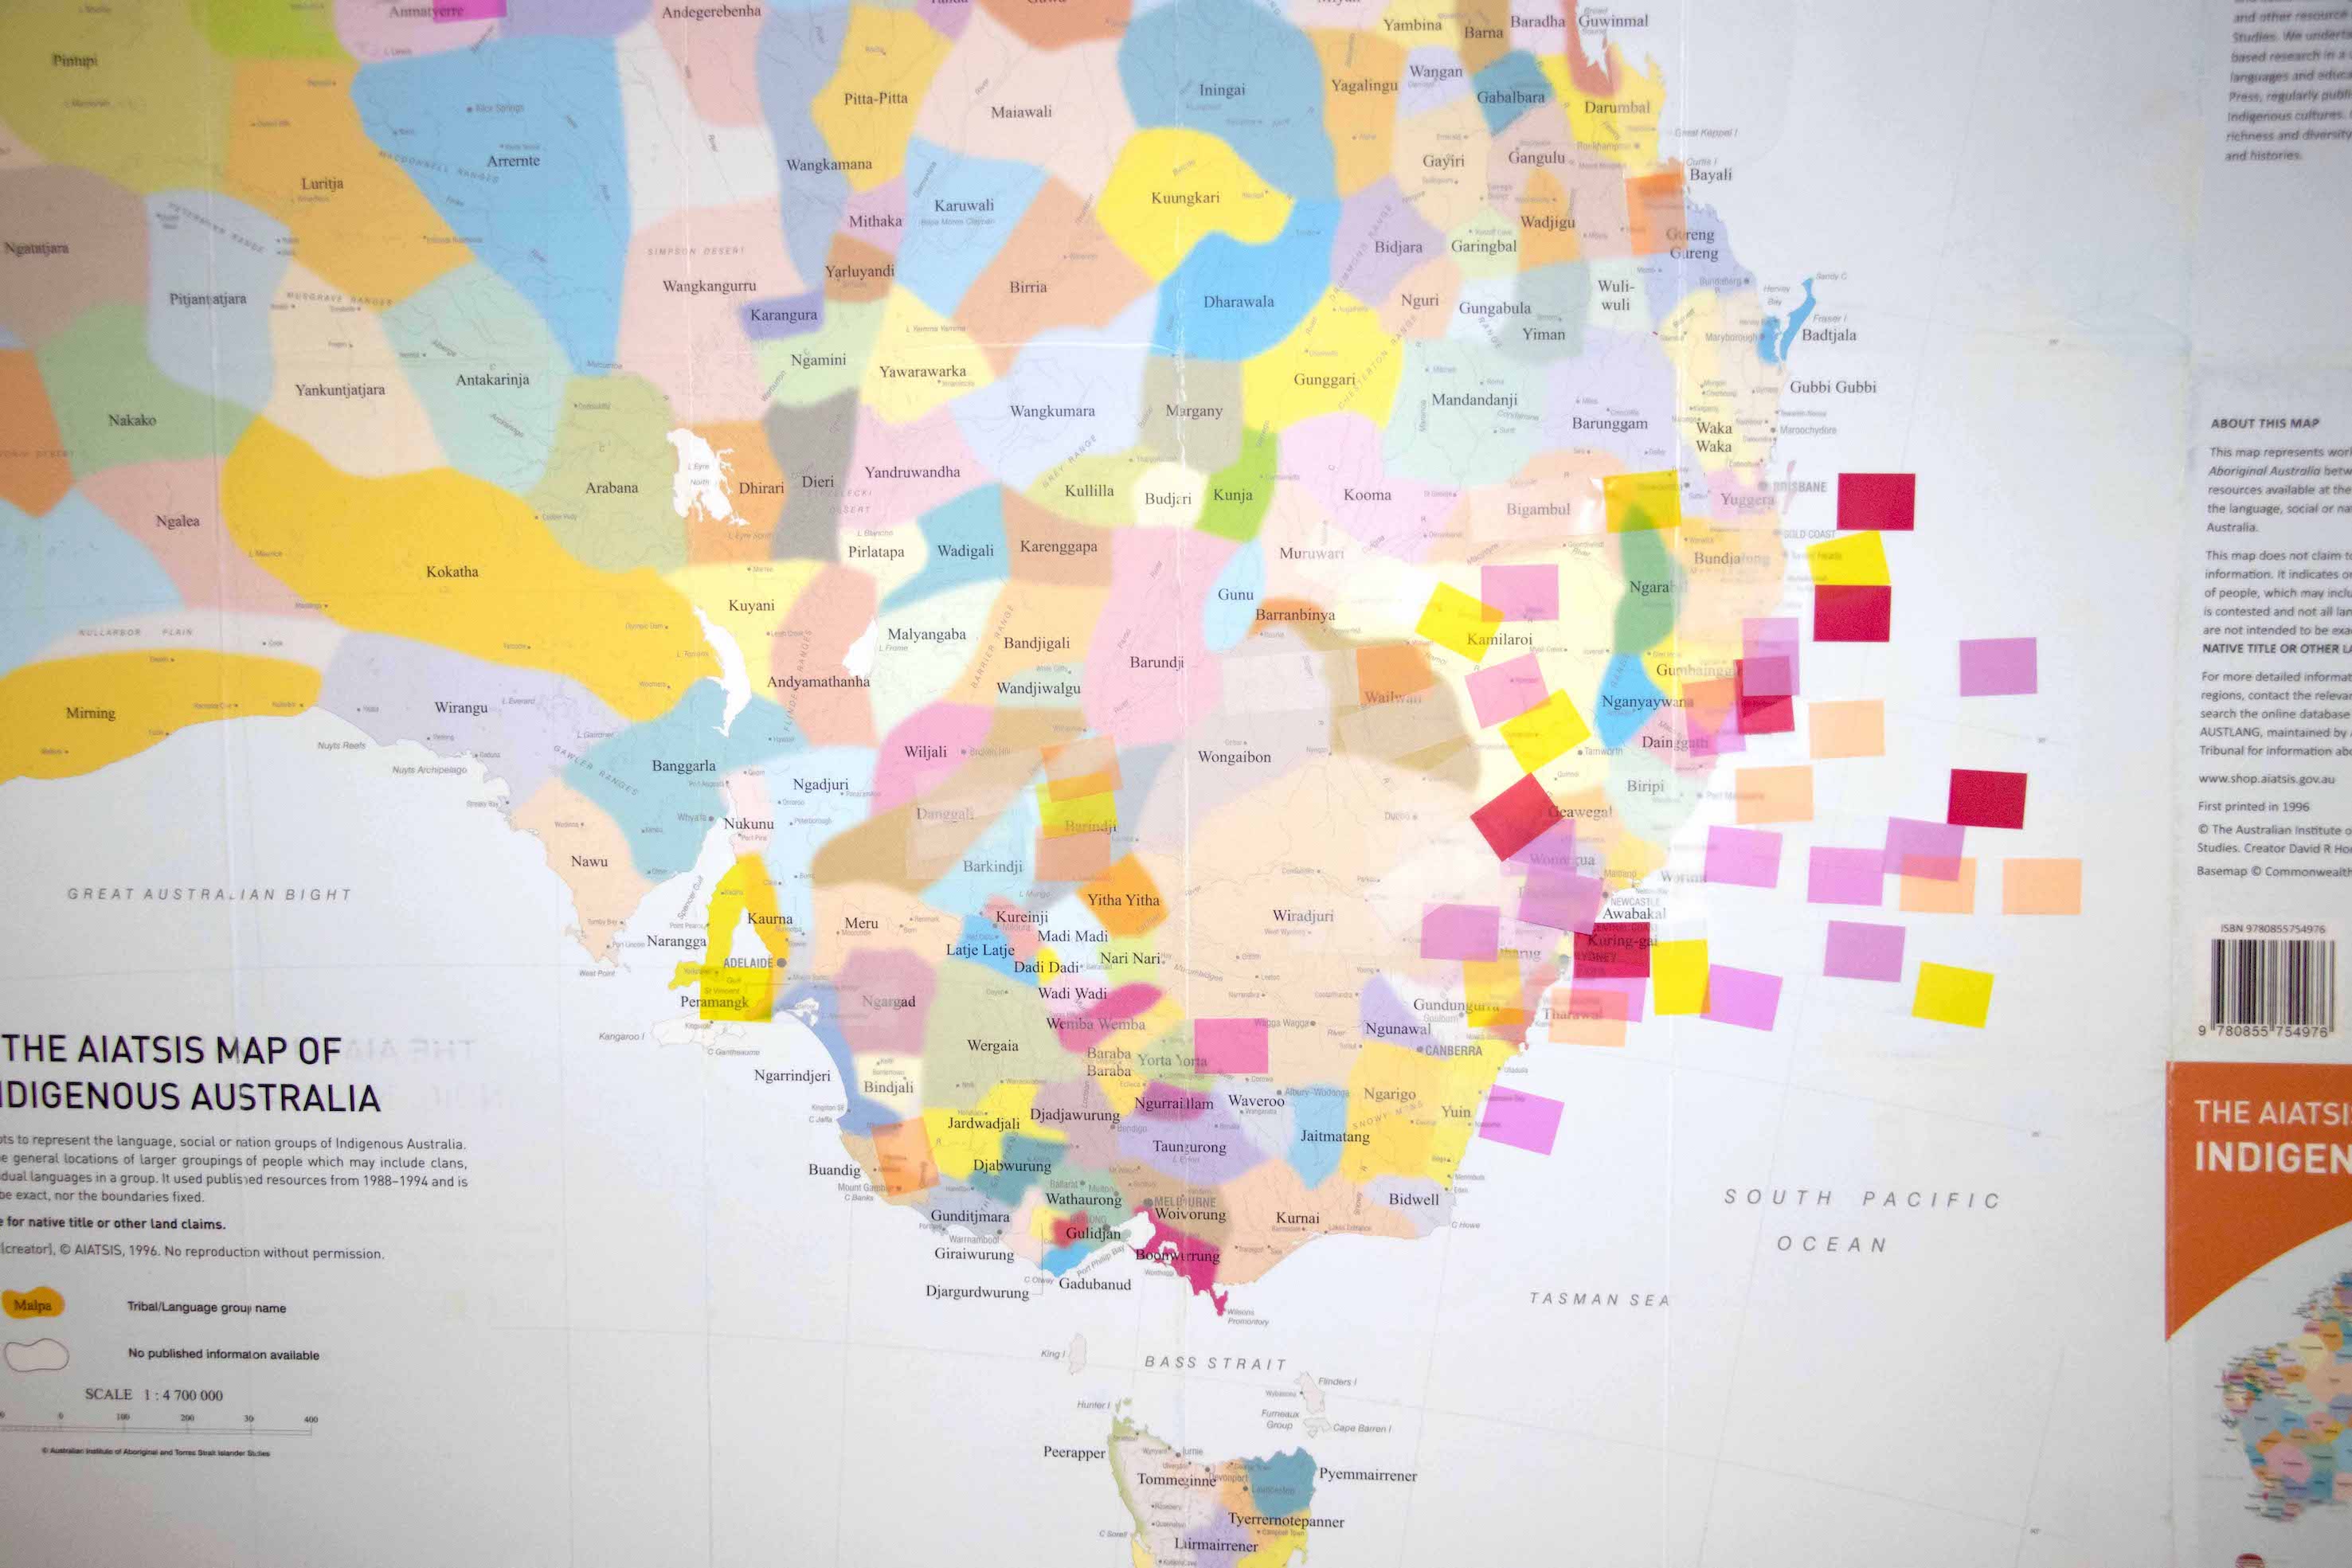 AITSIS map of Aboriginal & Torres Strait Islander Nations